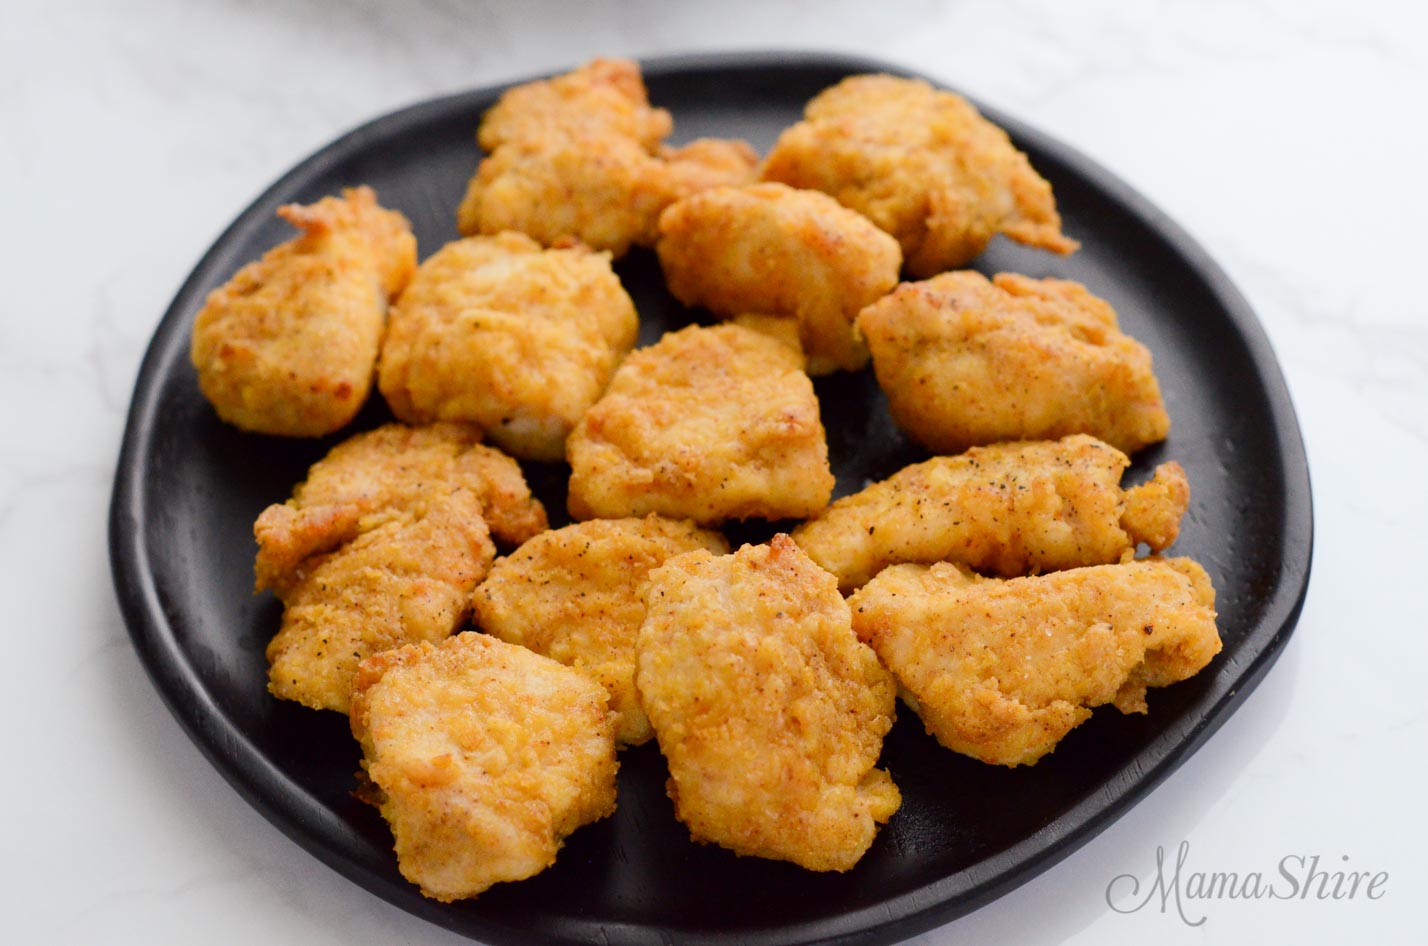 Gluten-Free chicken nuggets made in an air fryer.